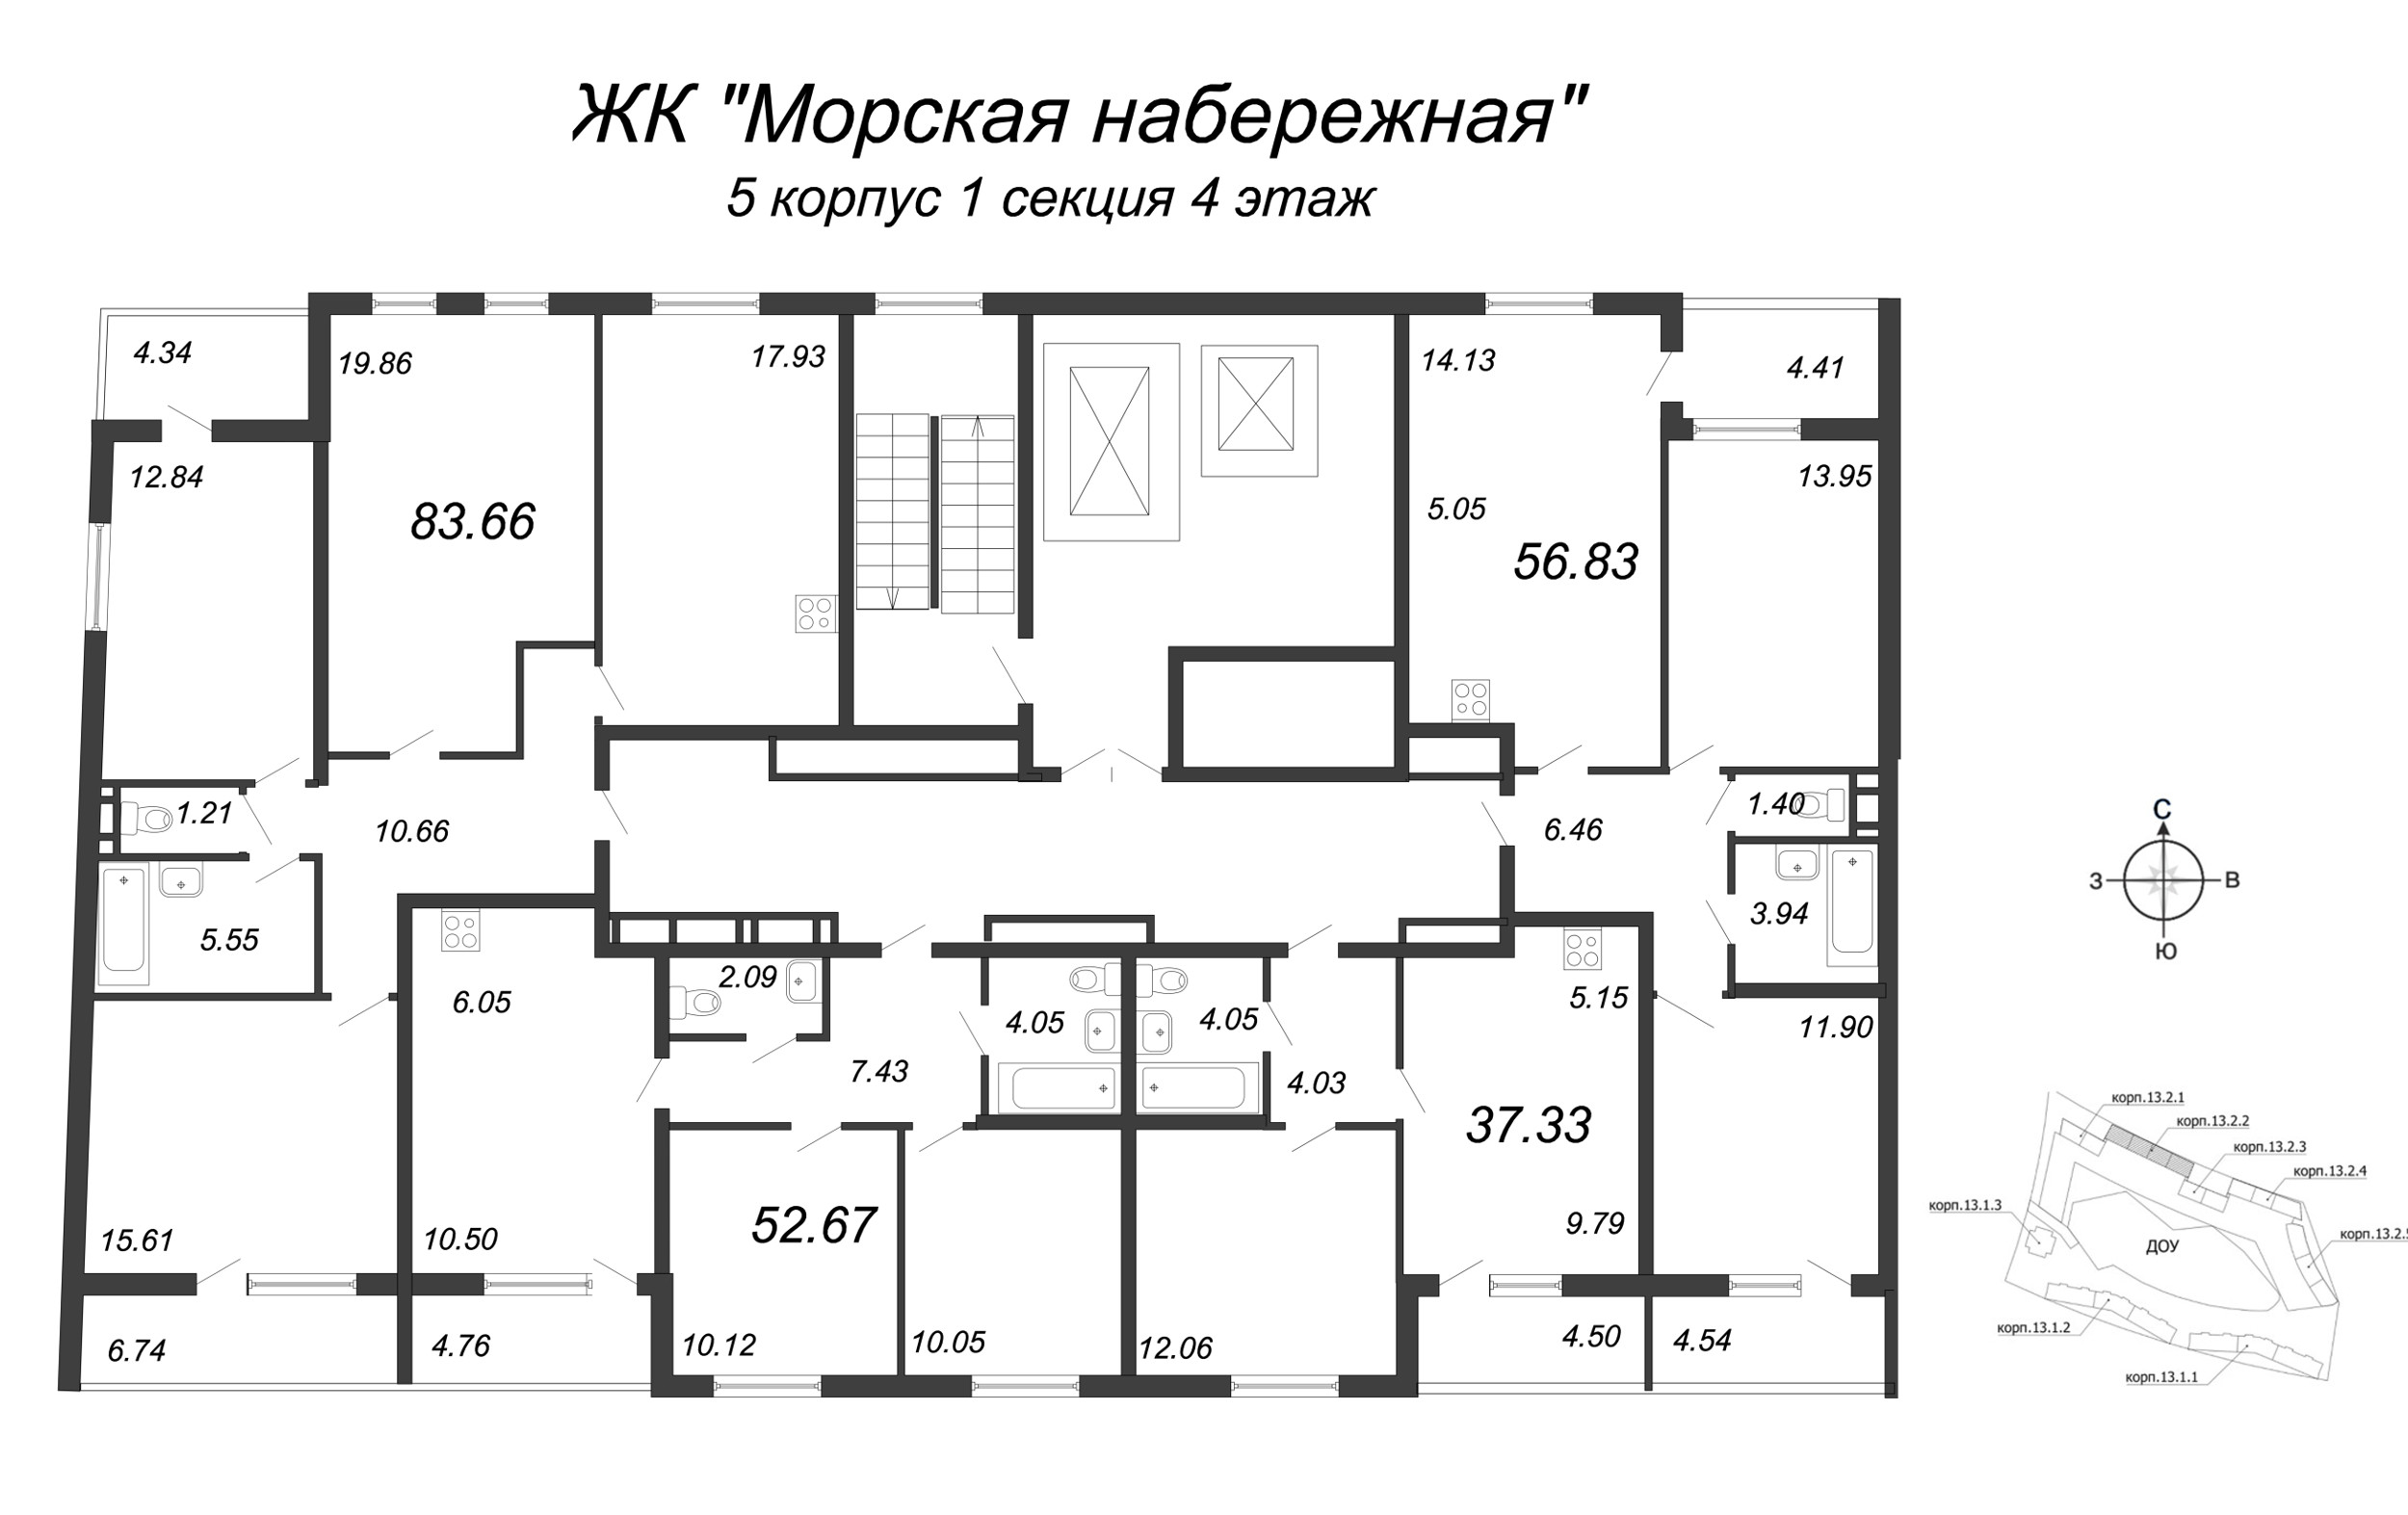 4-комнатная (Евро) квартира, 87.6 м² в ЖК "Морская набережная" - планировка этажа